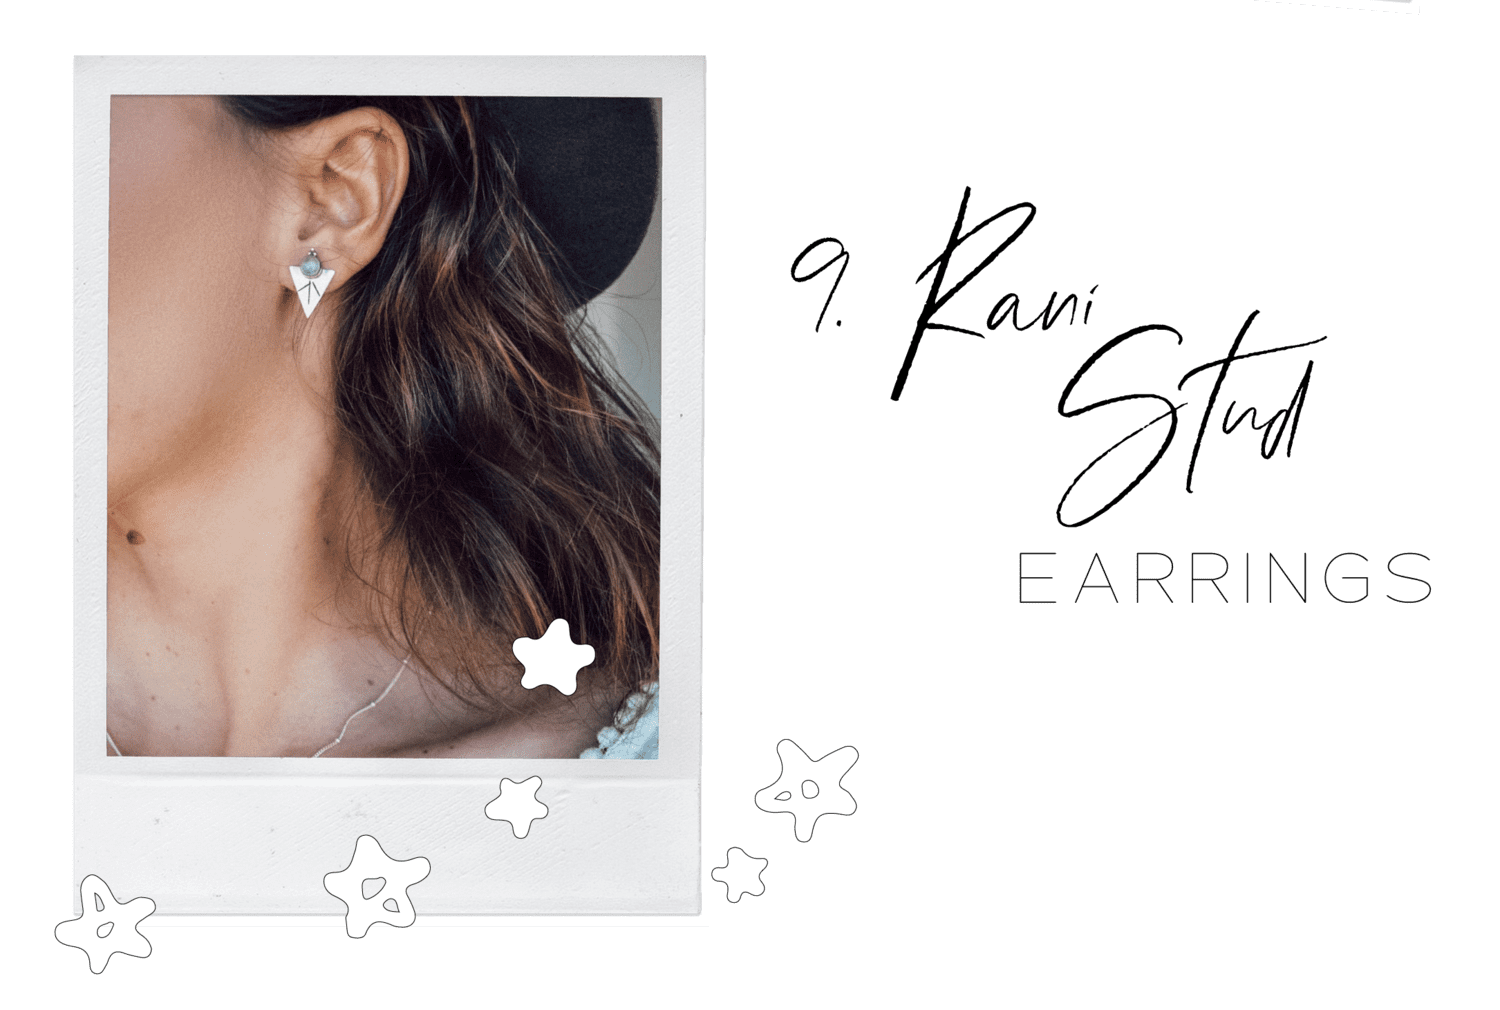 Rani Stud Earrings